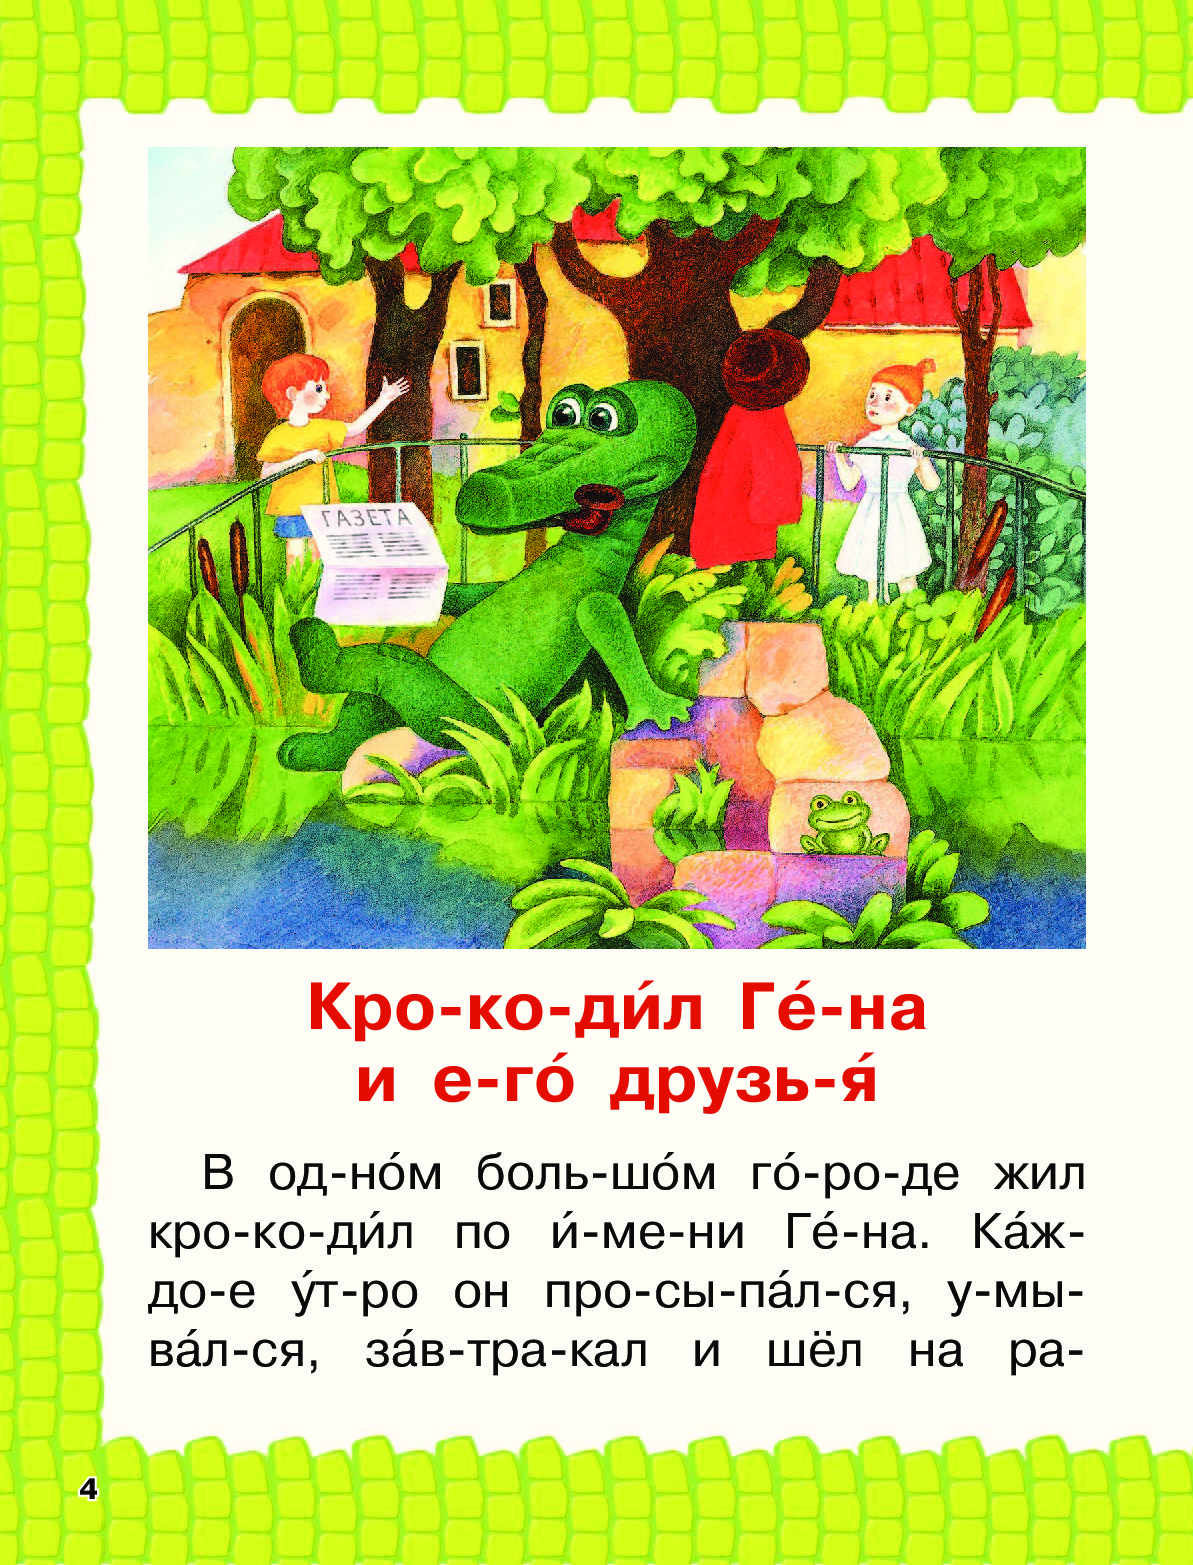 Рассказ гена и его друзья читать. Сказка про Чебурашку и крокодила Гену читать. Читаю по слогам истории про Чебурашку.